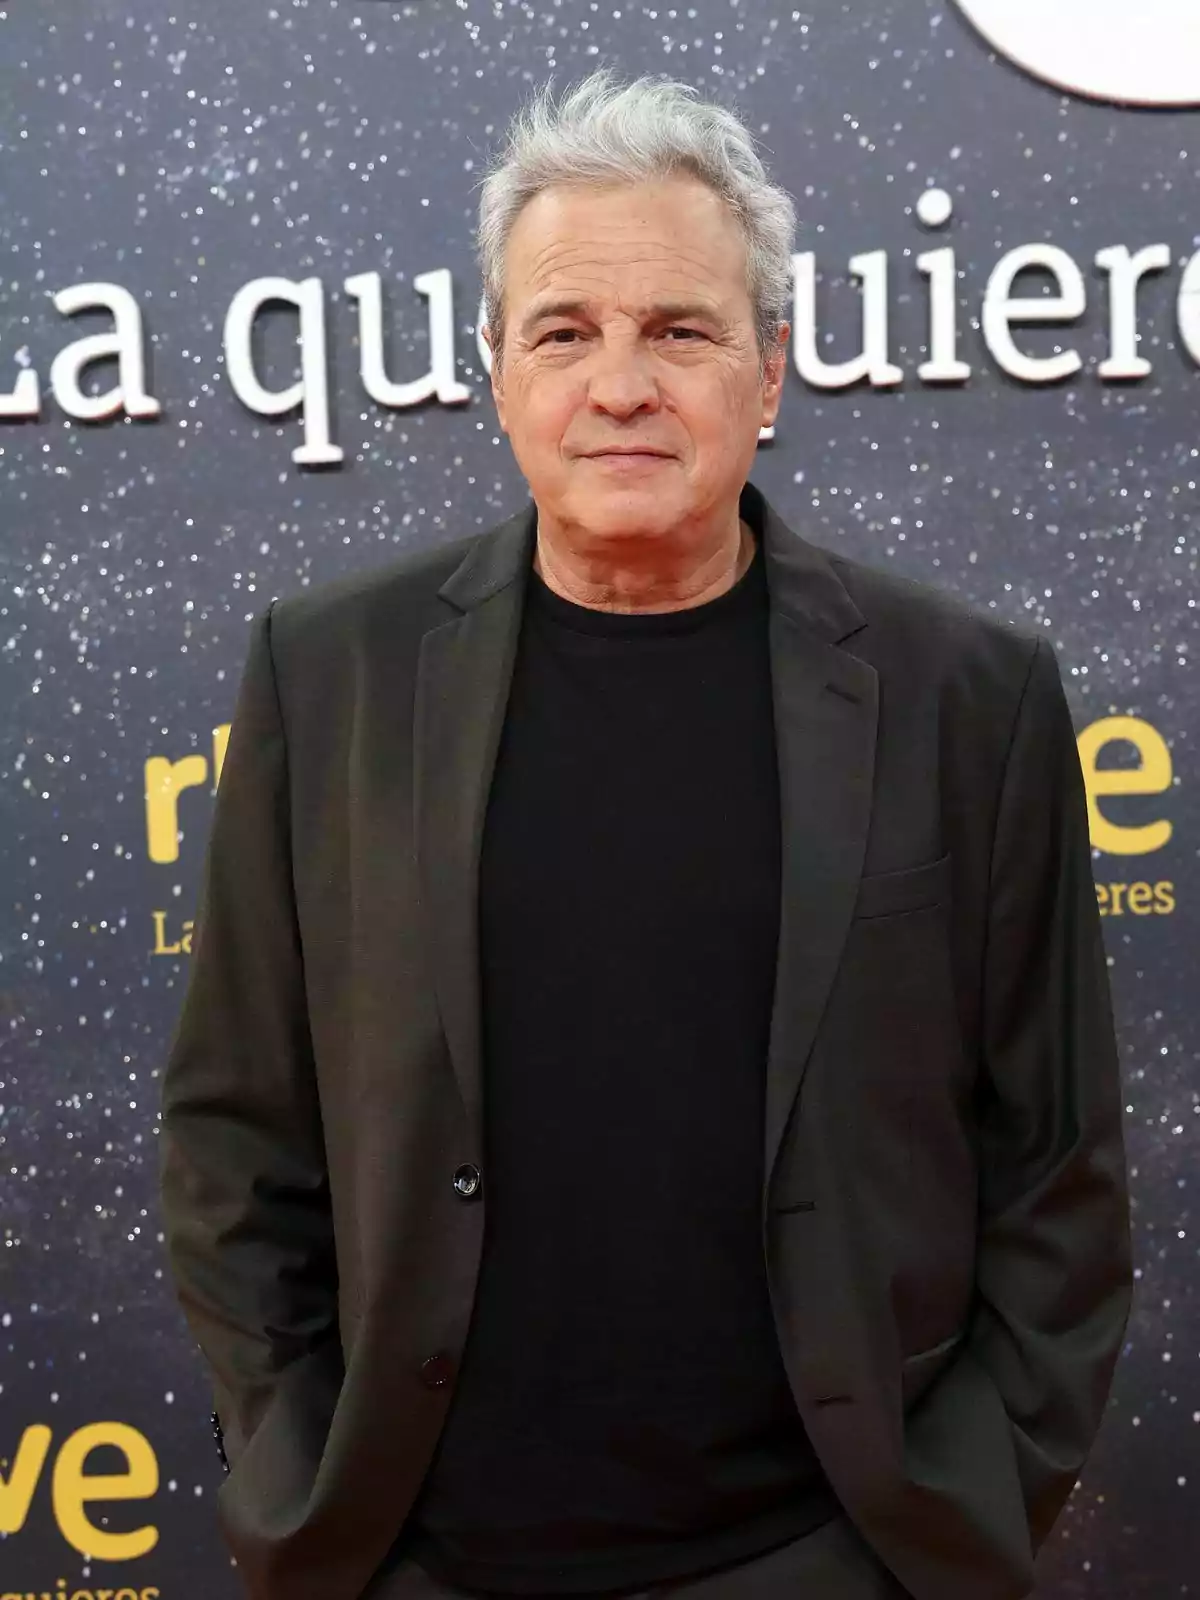 David Summers de expresión seria, vestido con un traje oscuro y camiseta negra, posa frente a un fondo estrellado con letras blancas y amarillas.